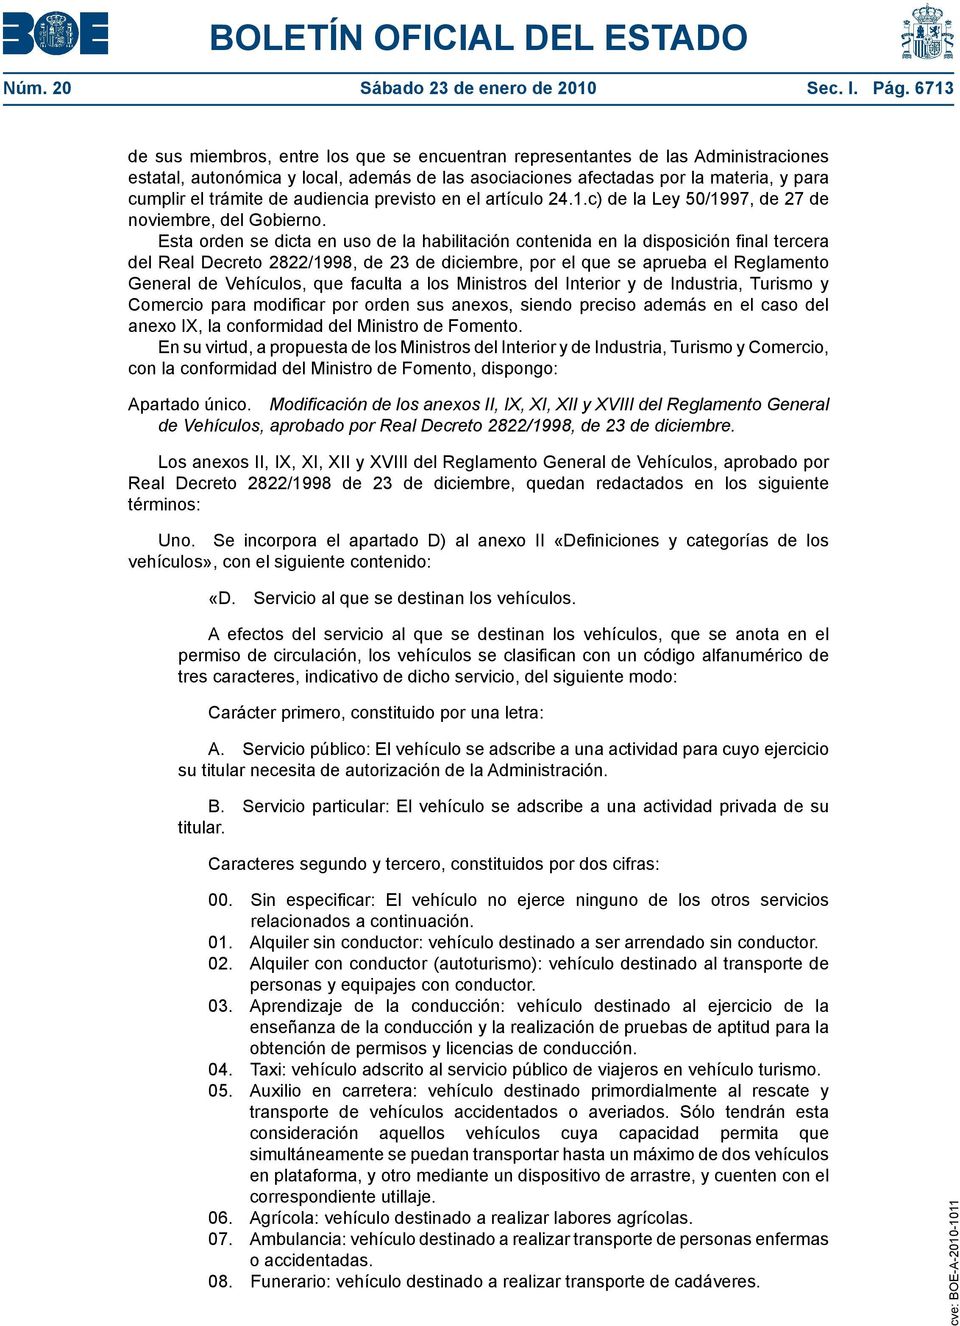 audiencia previsto en el artículo 24.1.c) de la Ley 50/1997, de 27 de noviembre, del Gobierno.